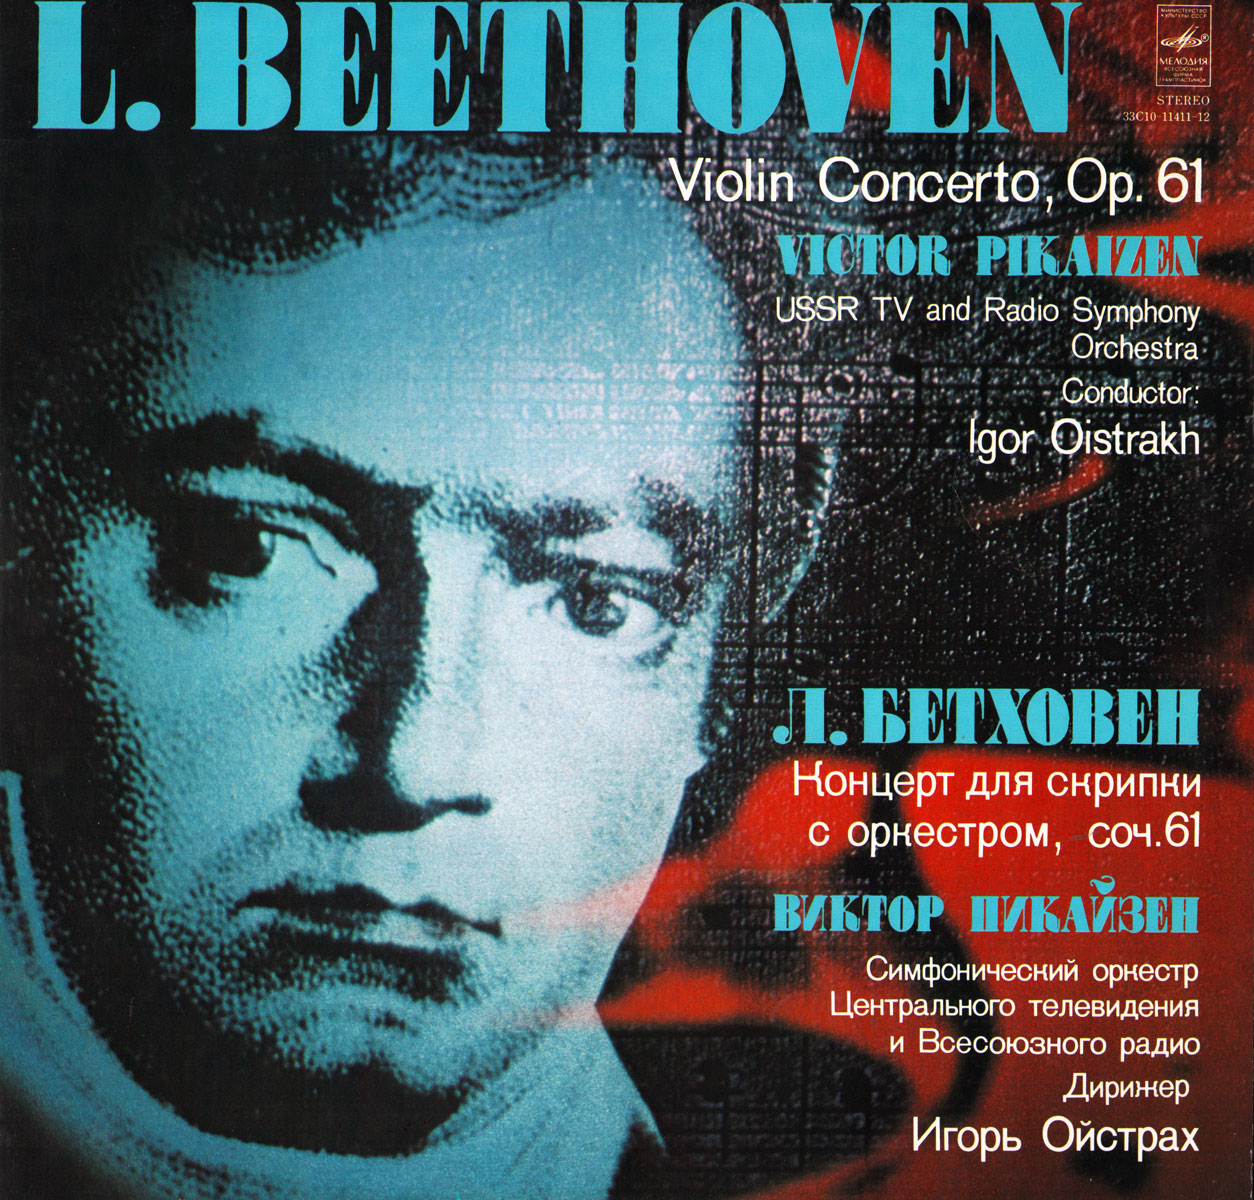 Л. БЕТХОВЕН. Концерт для скрипки с оркестром ре мажор, соч. 61 (В. Пикайзен)